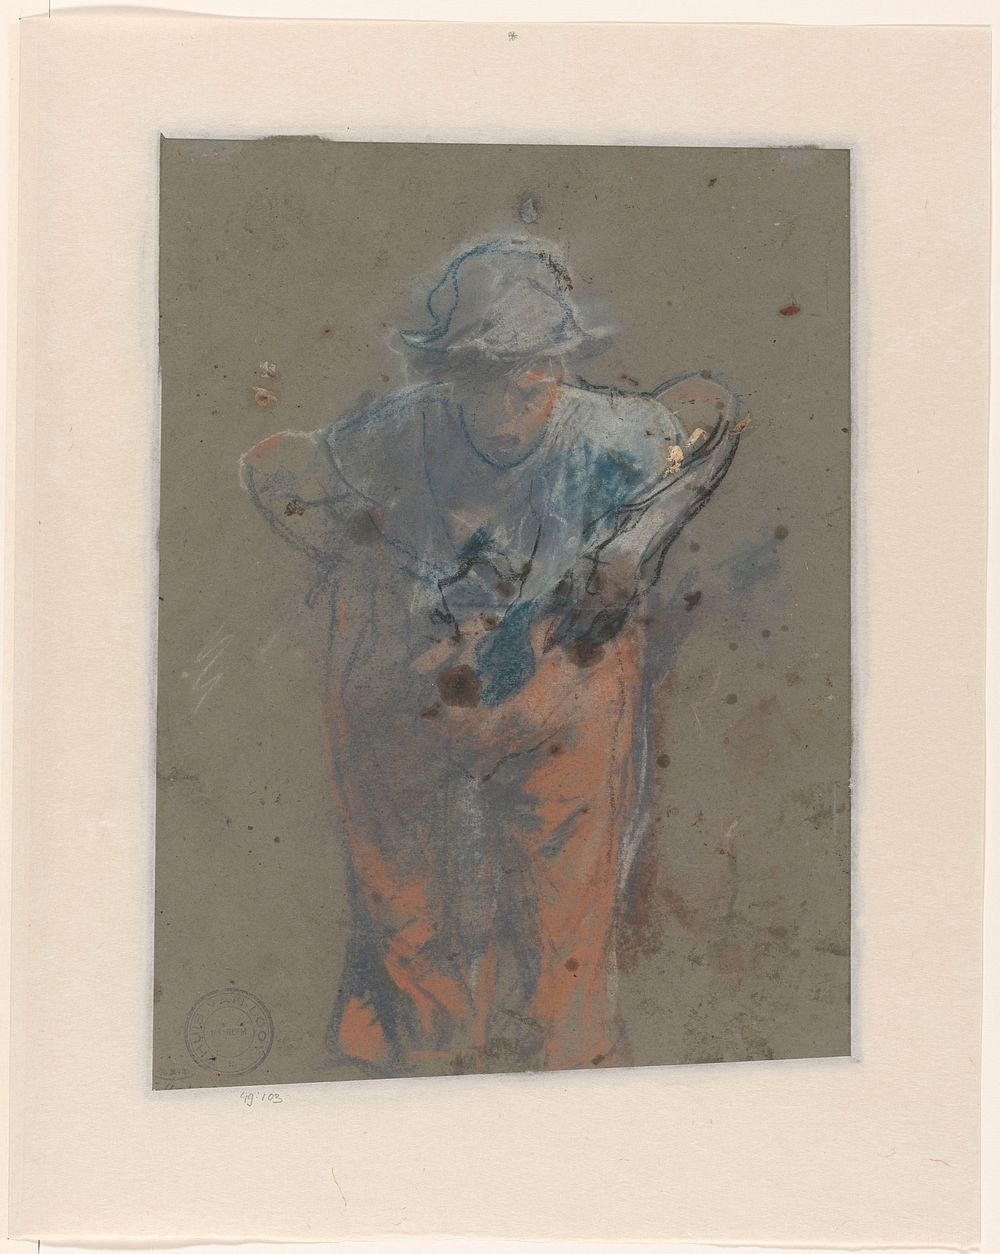 Voorovergebogen staande vrouw (1865 - 1930) by Jac van Looij